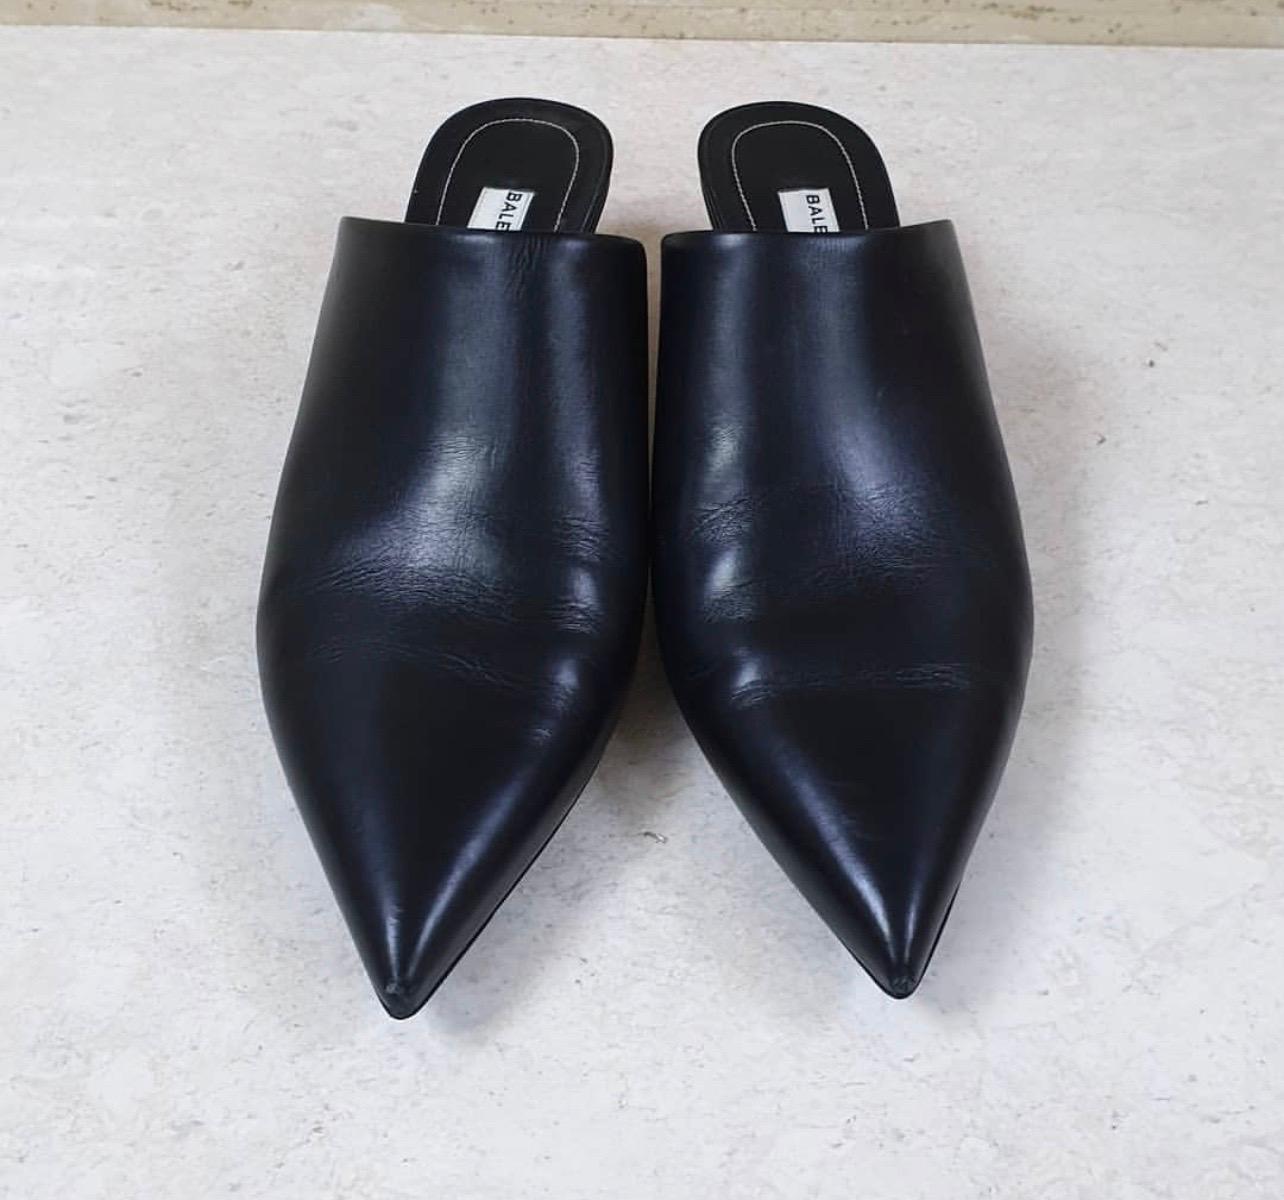 Balenciaga smooth leather mule.

1.8